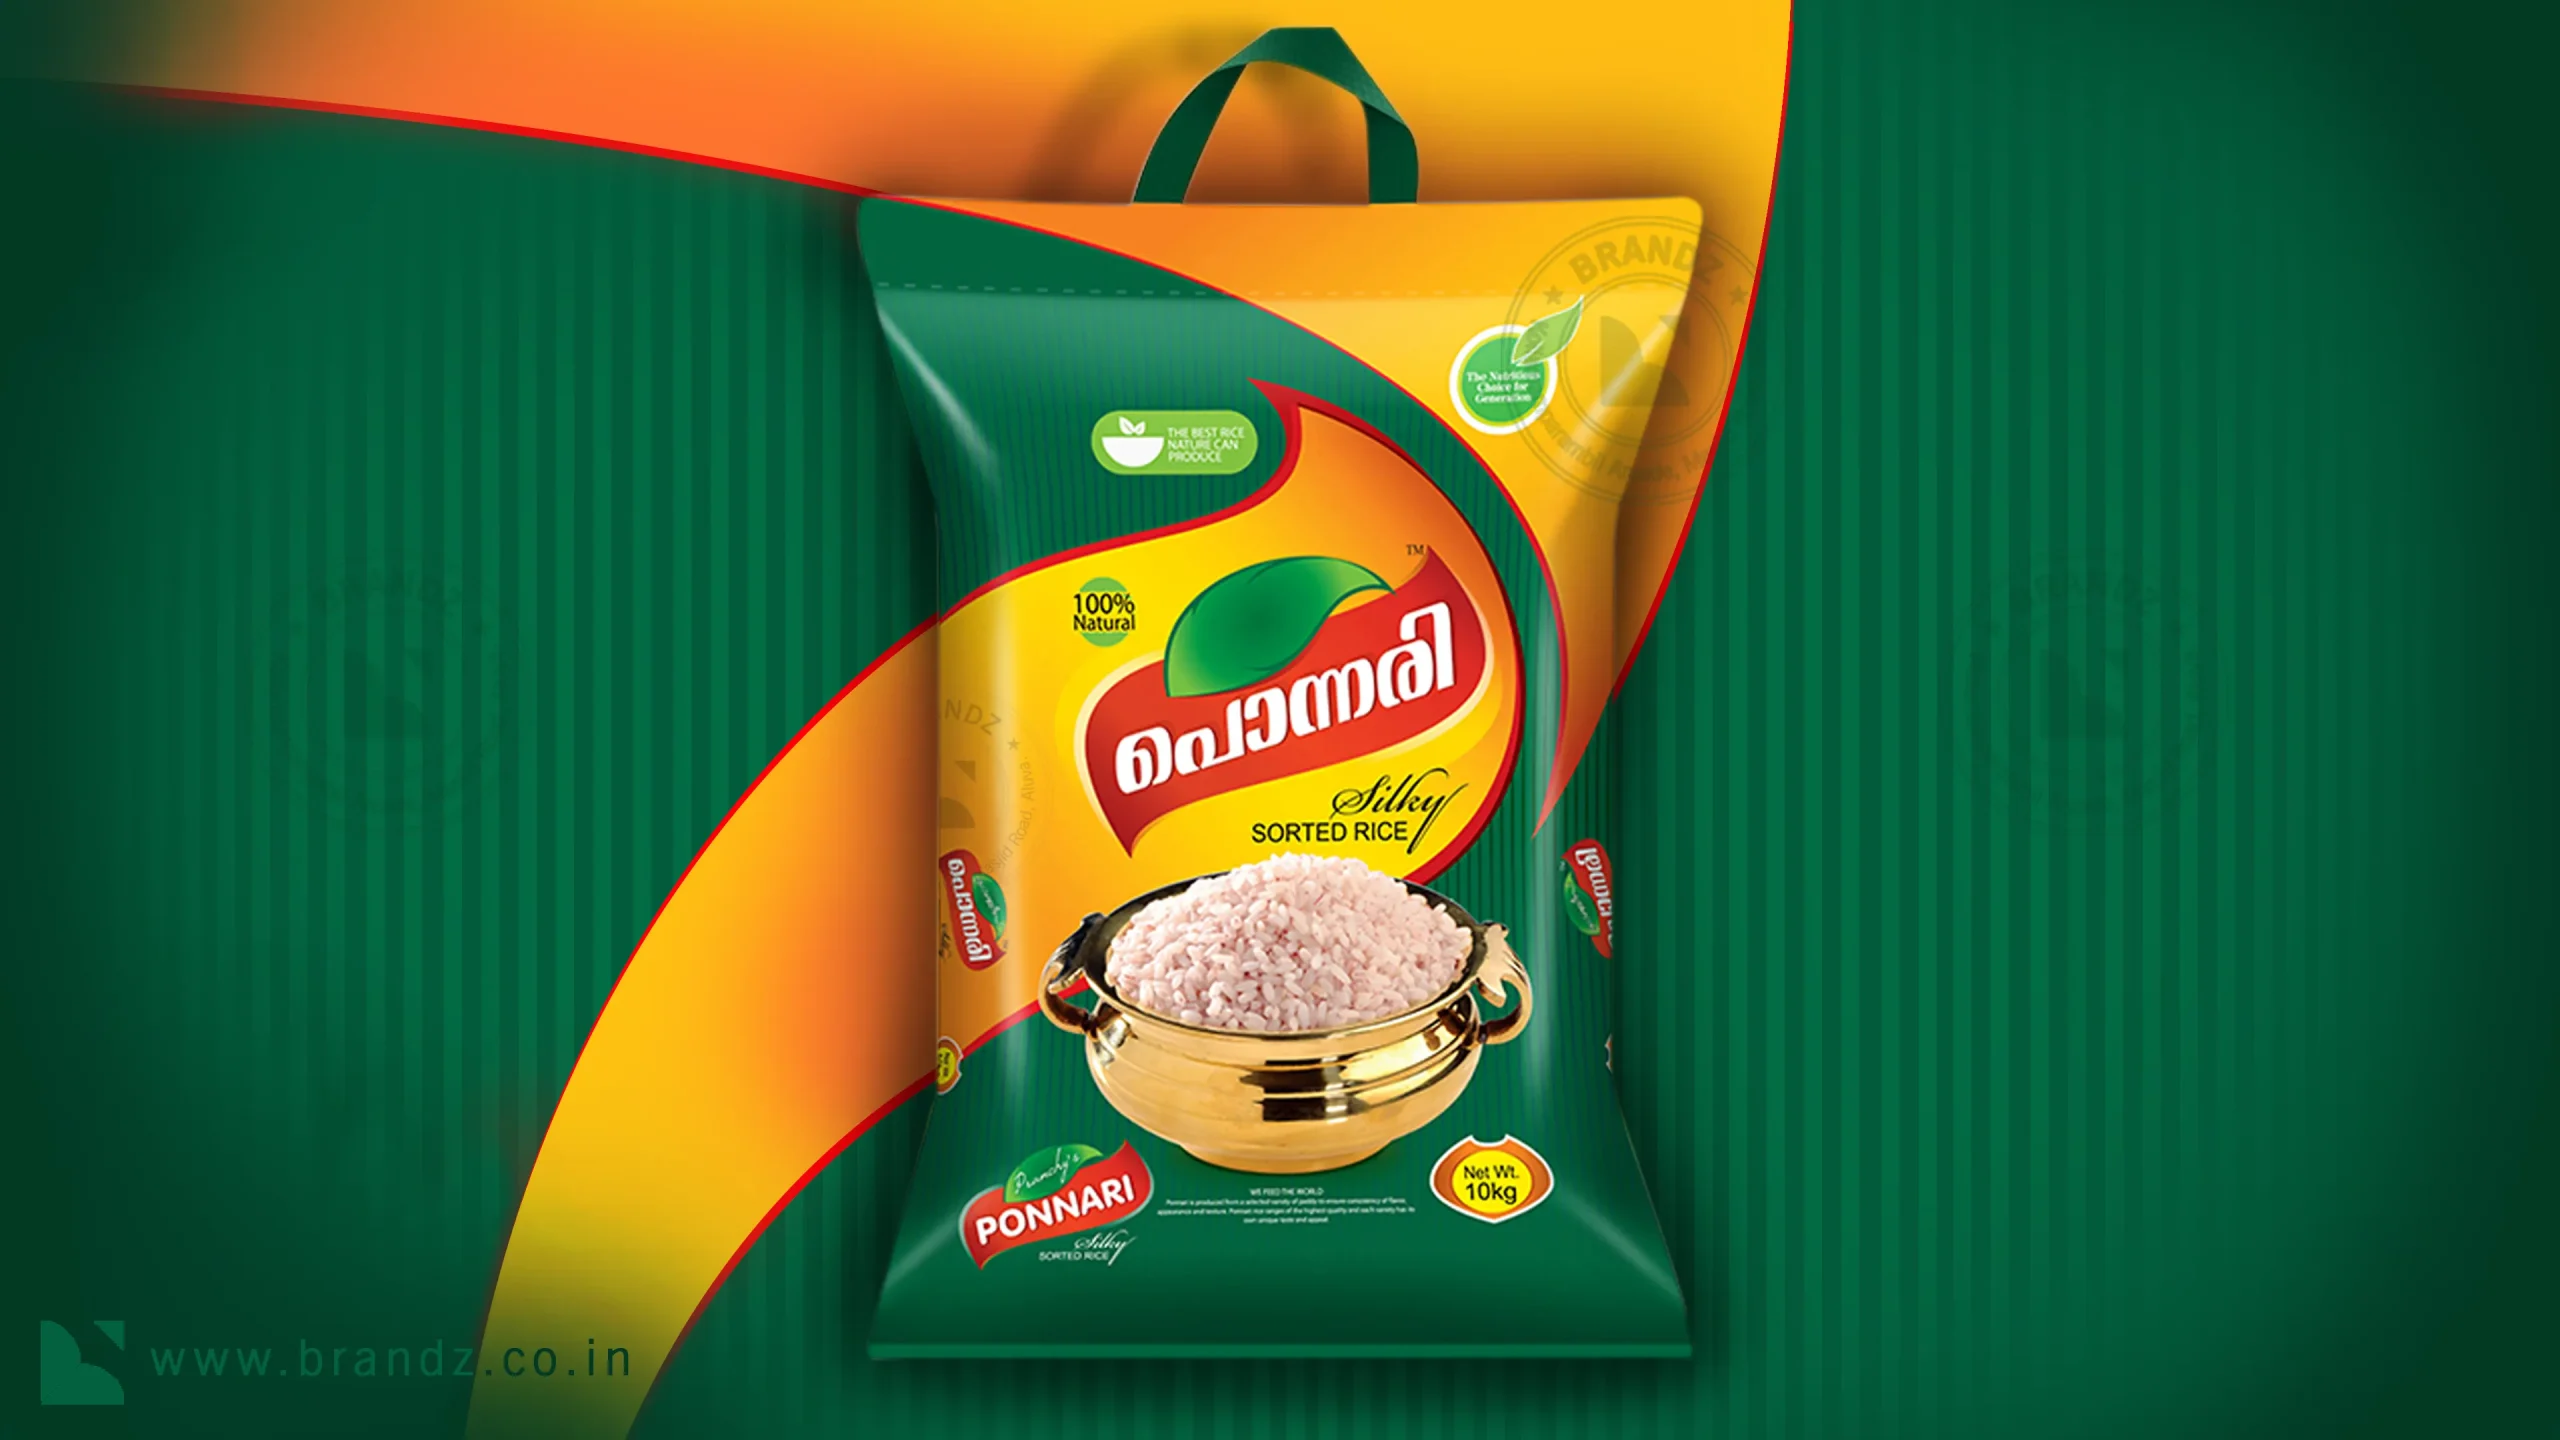 Ponnari Sorted Rice Bag